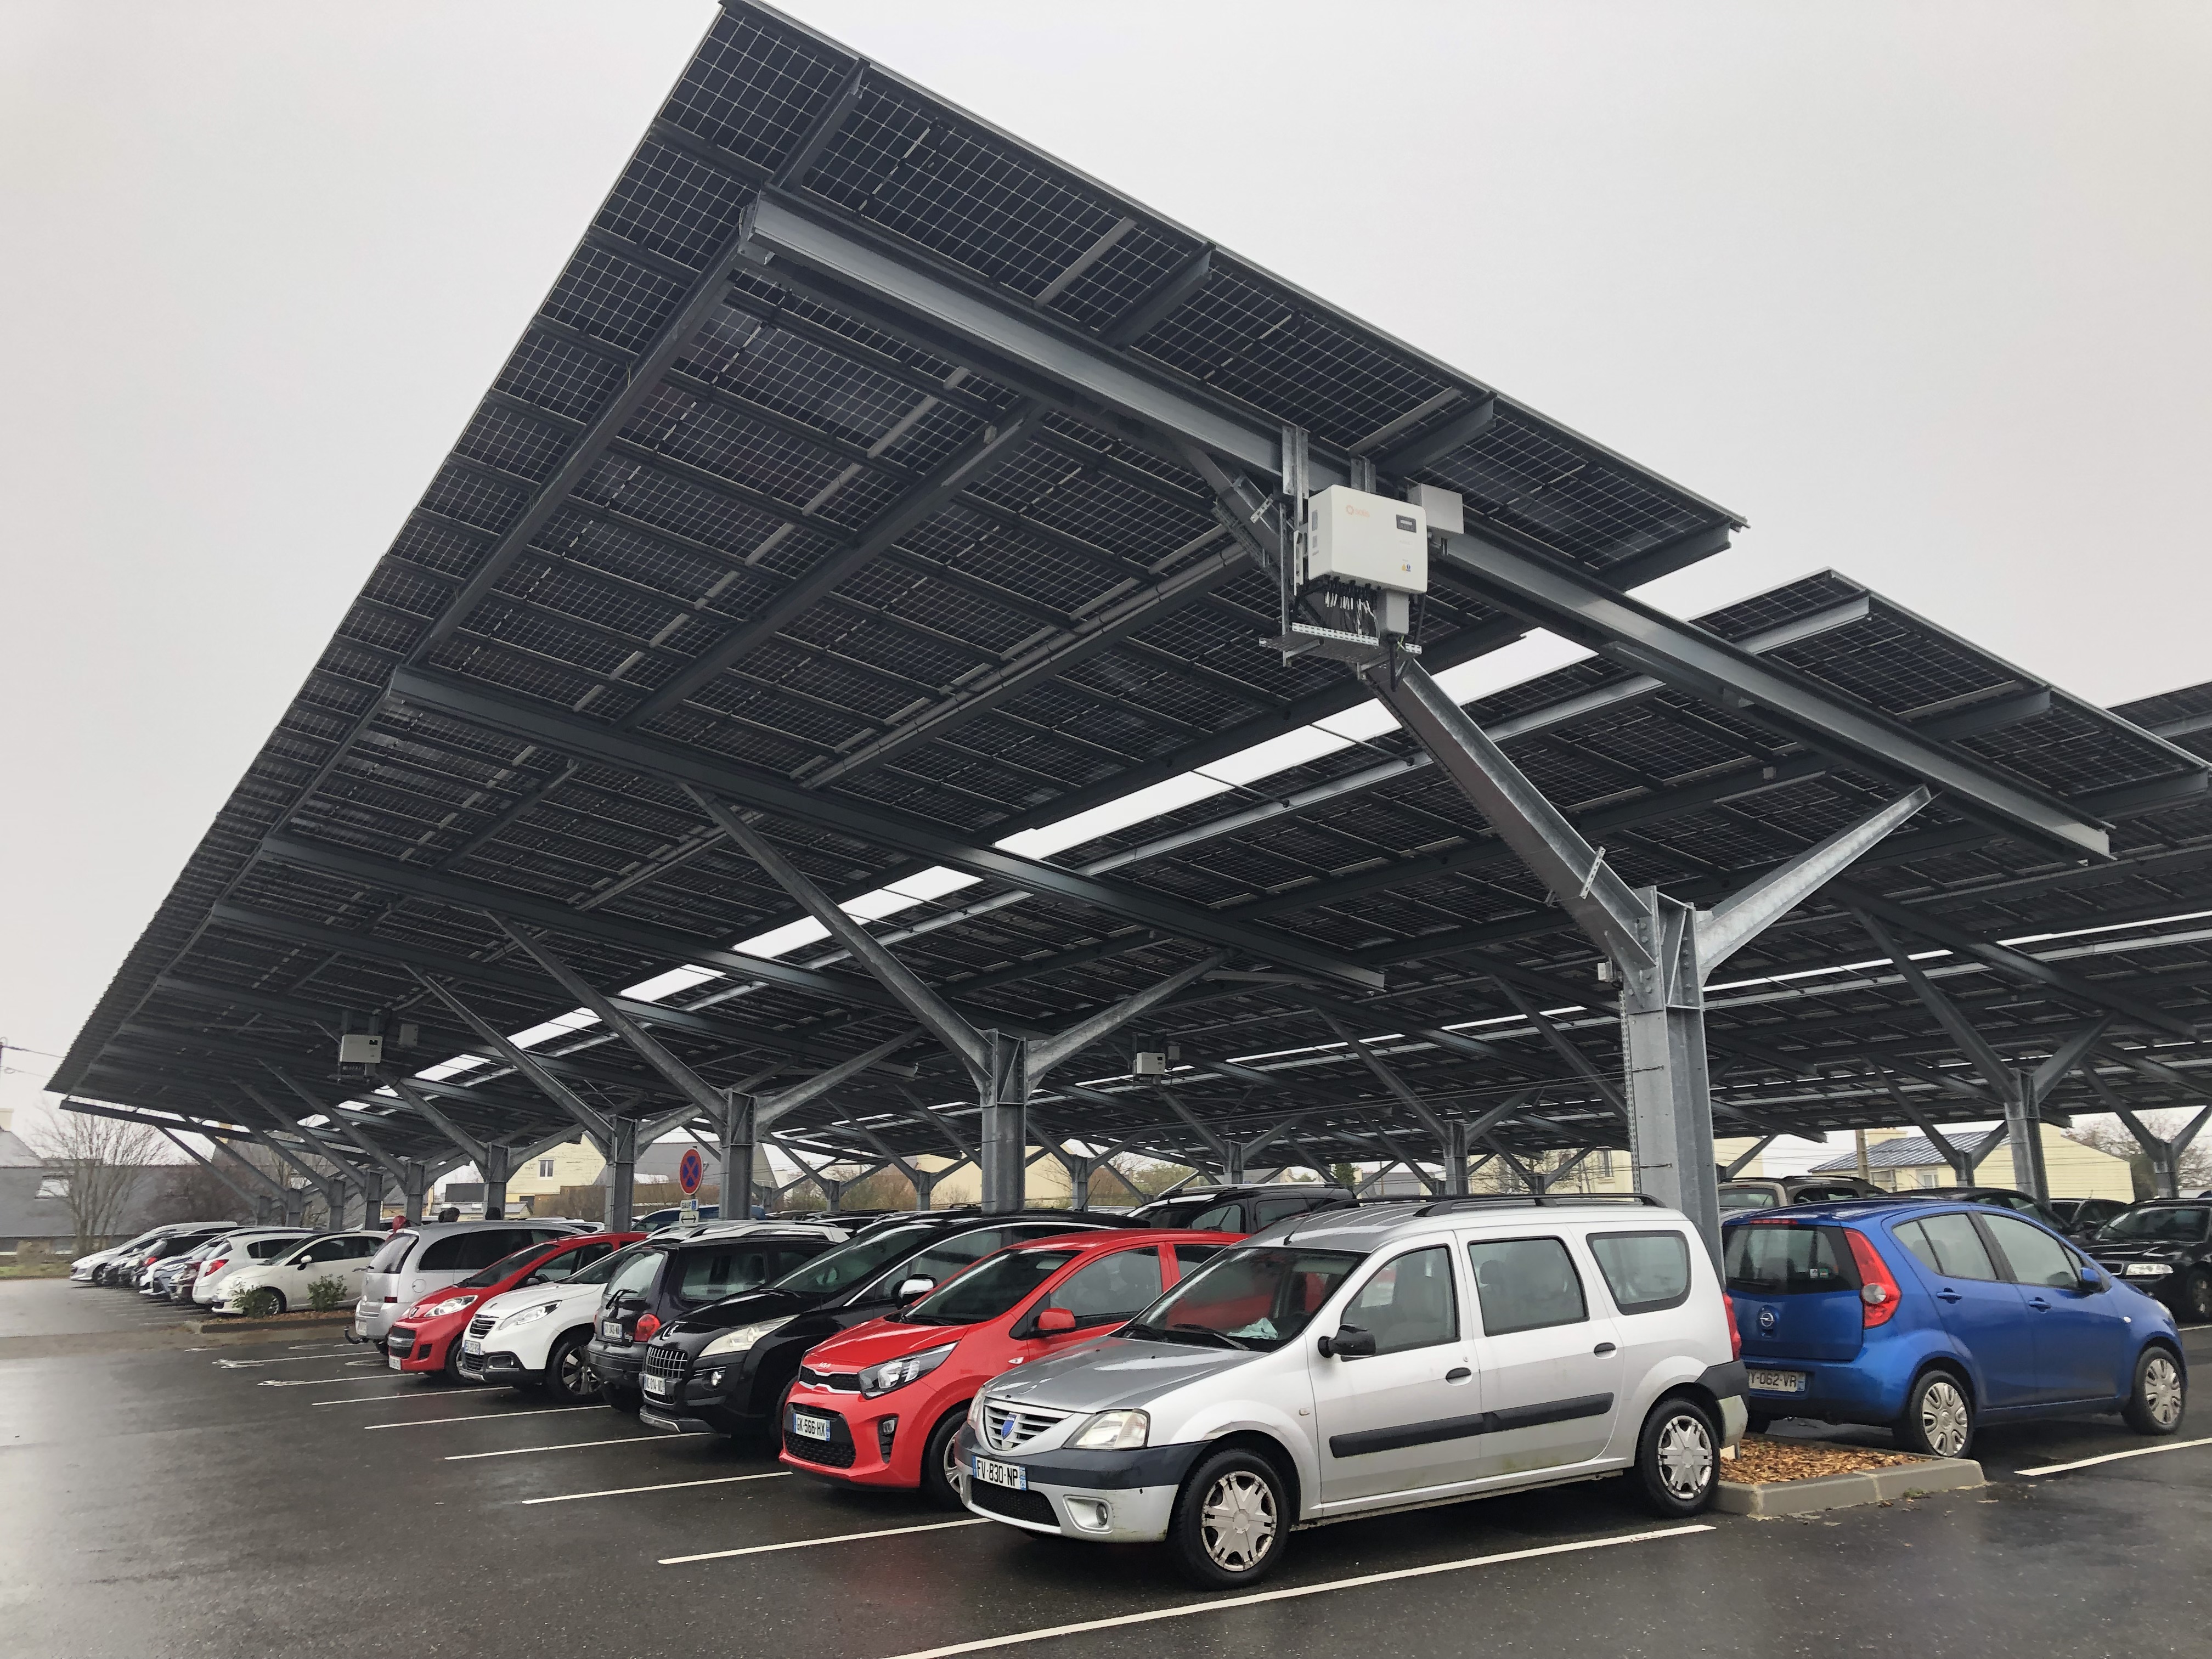 Sur un parking couvert de panneaux solaires, des voitures sont alignées sur plusieurs rangées.